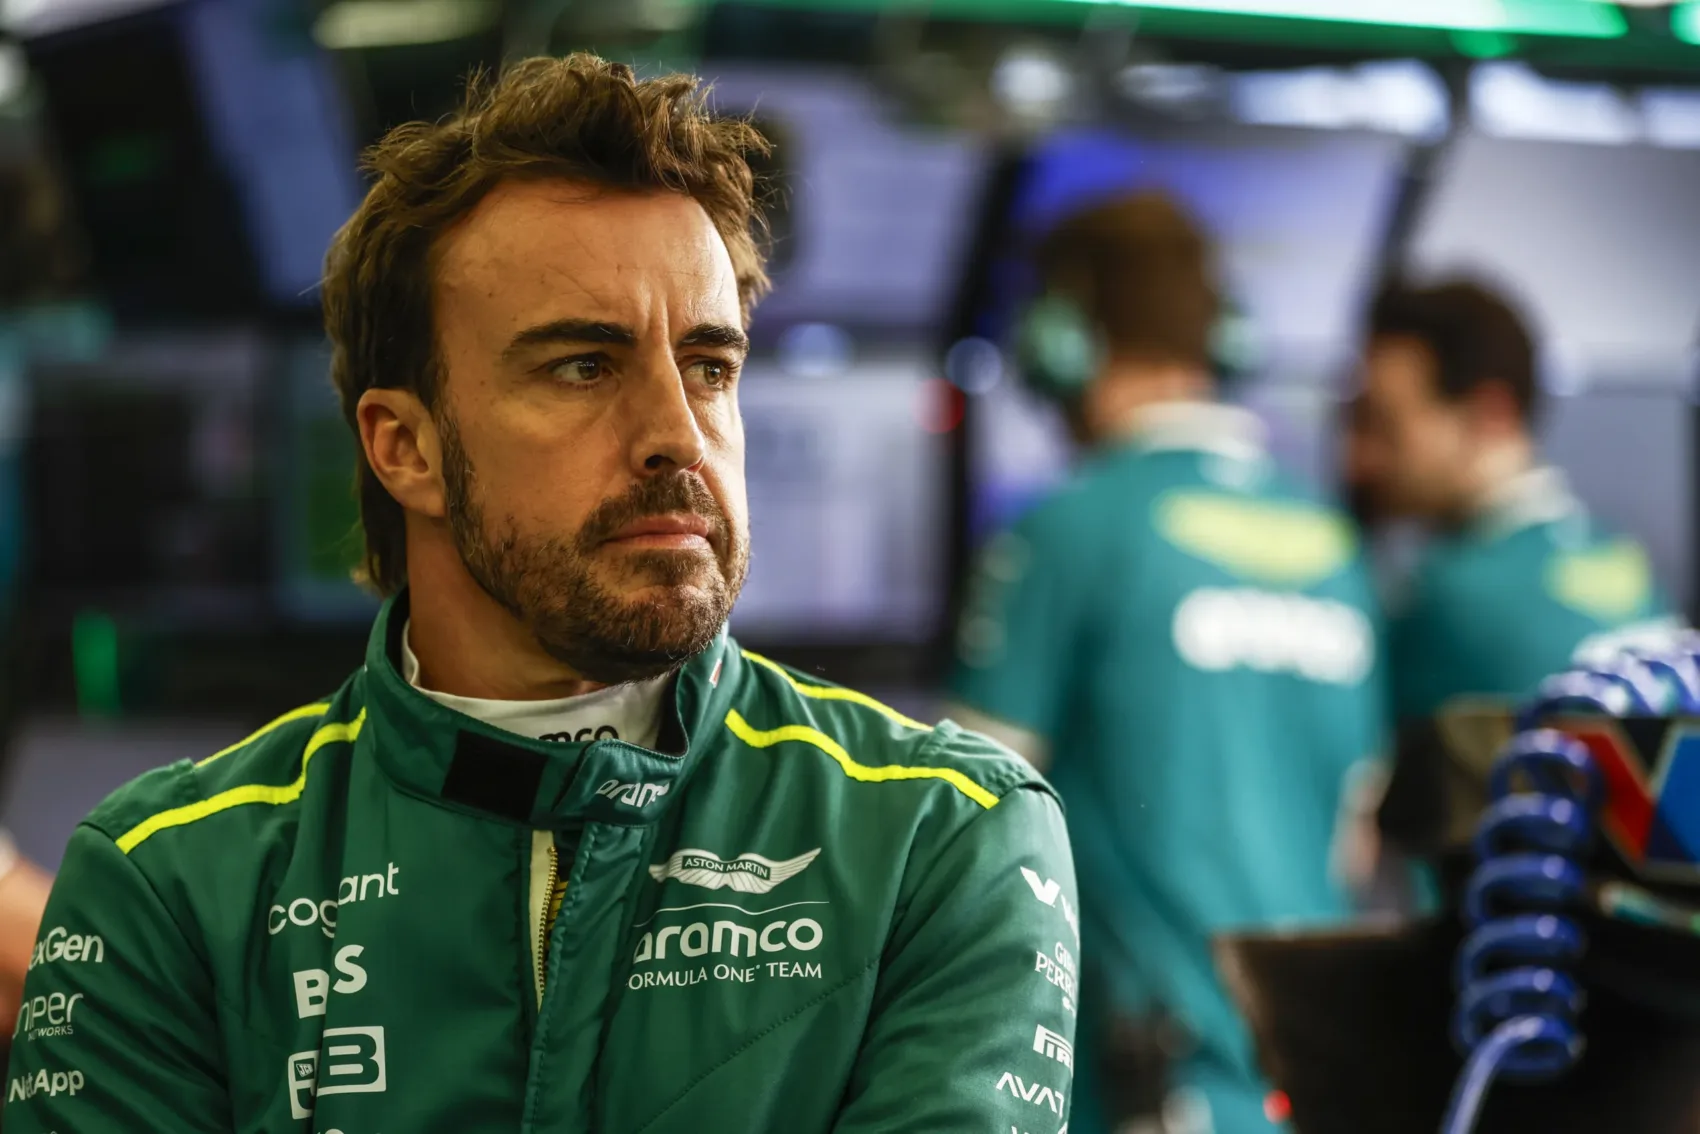 Alonso Mercedes csapathoz igazolása a hétvégi sorozat mozgatórugója lehet